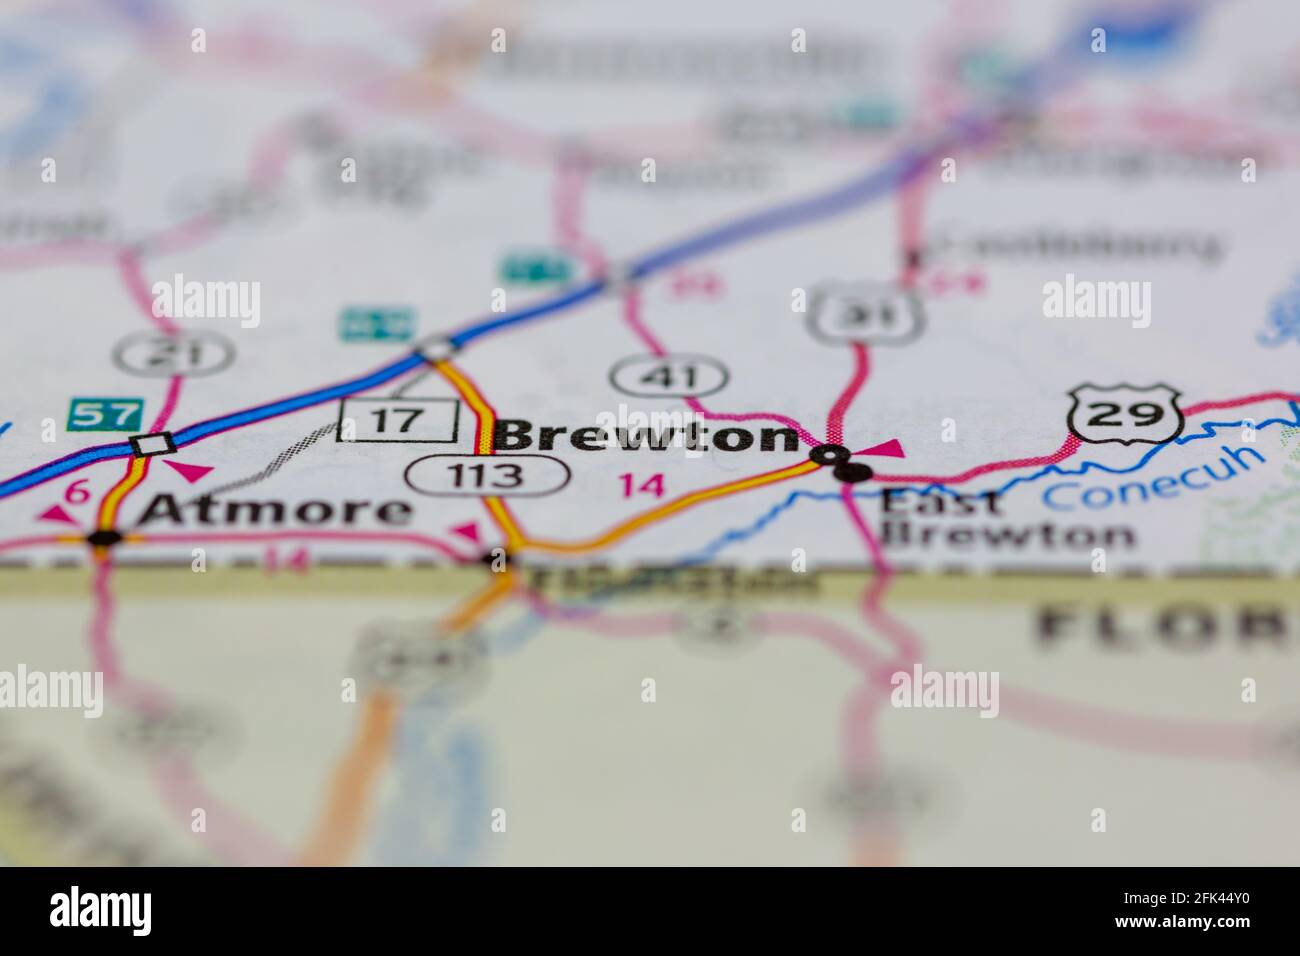 Brewton Alabama USA sur une carte géographique ou une route carte Banque D'Images